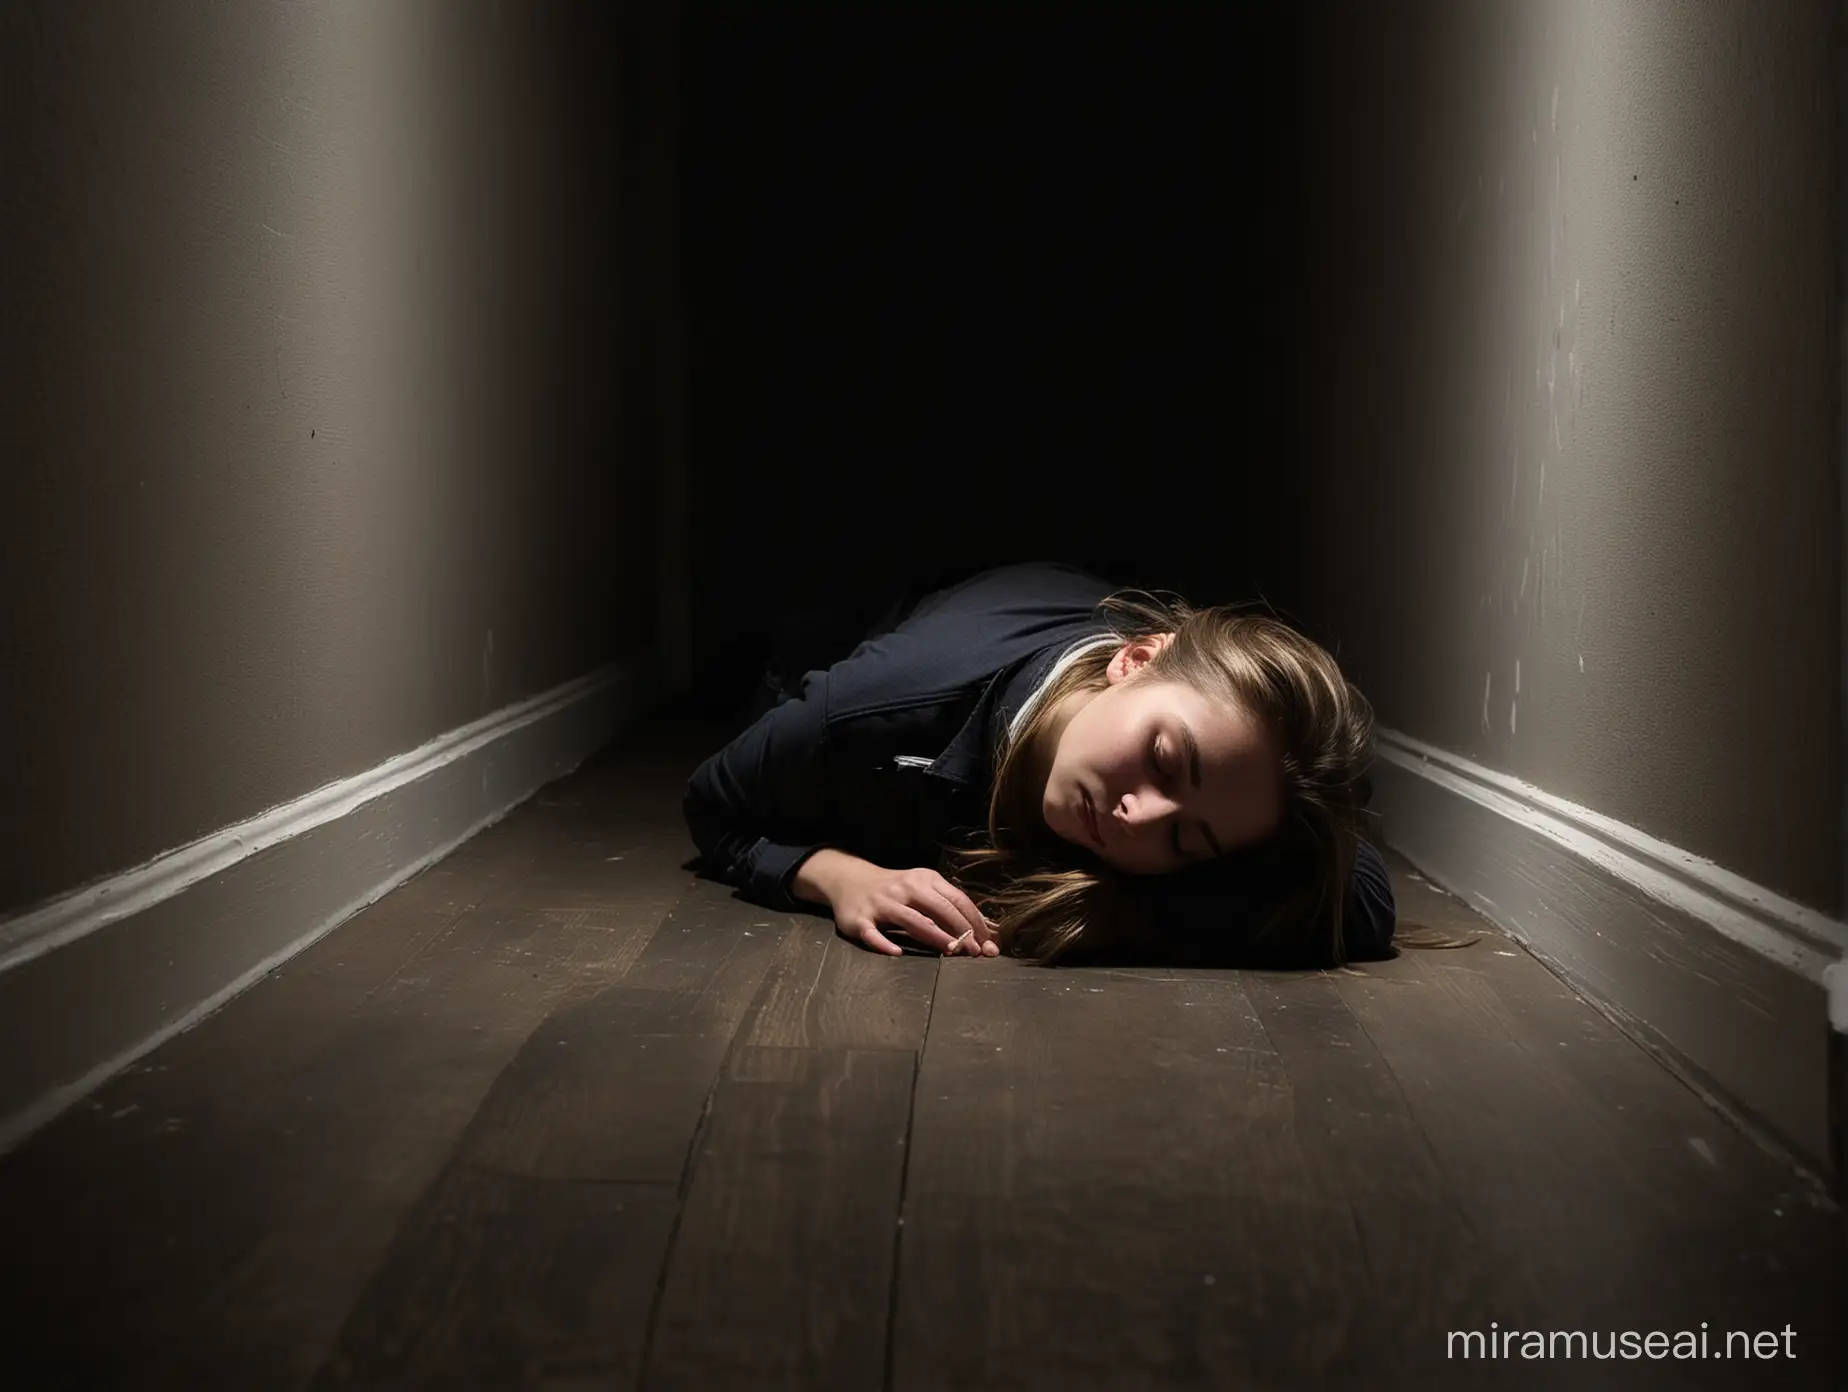 un joven adolescente desmayado boca abajo en el piso de una habitación muy oscura, por la noche.